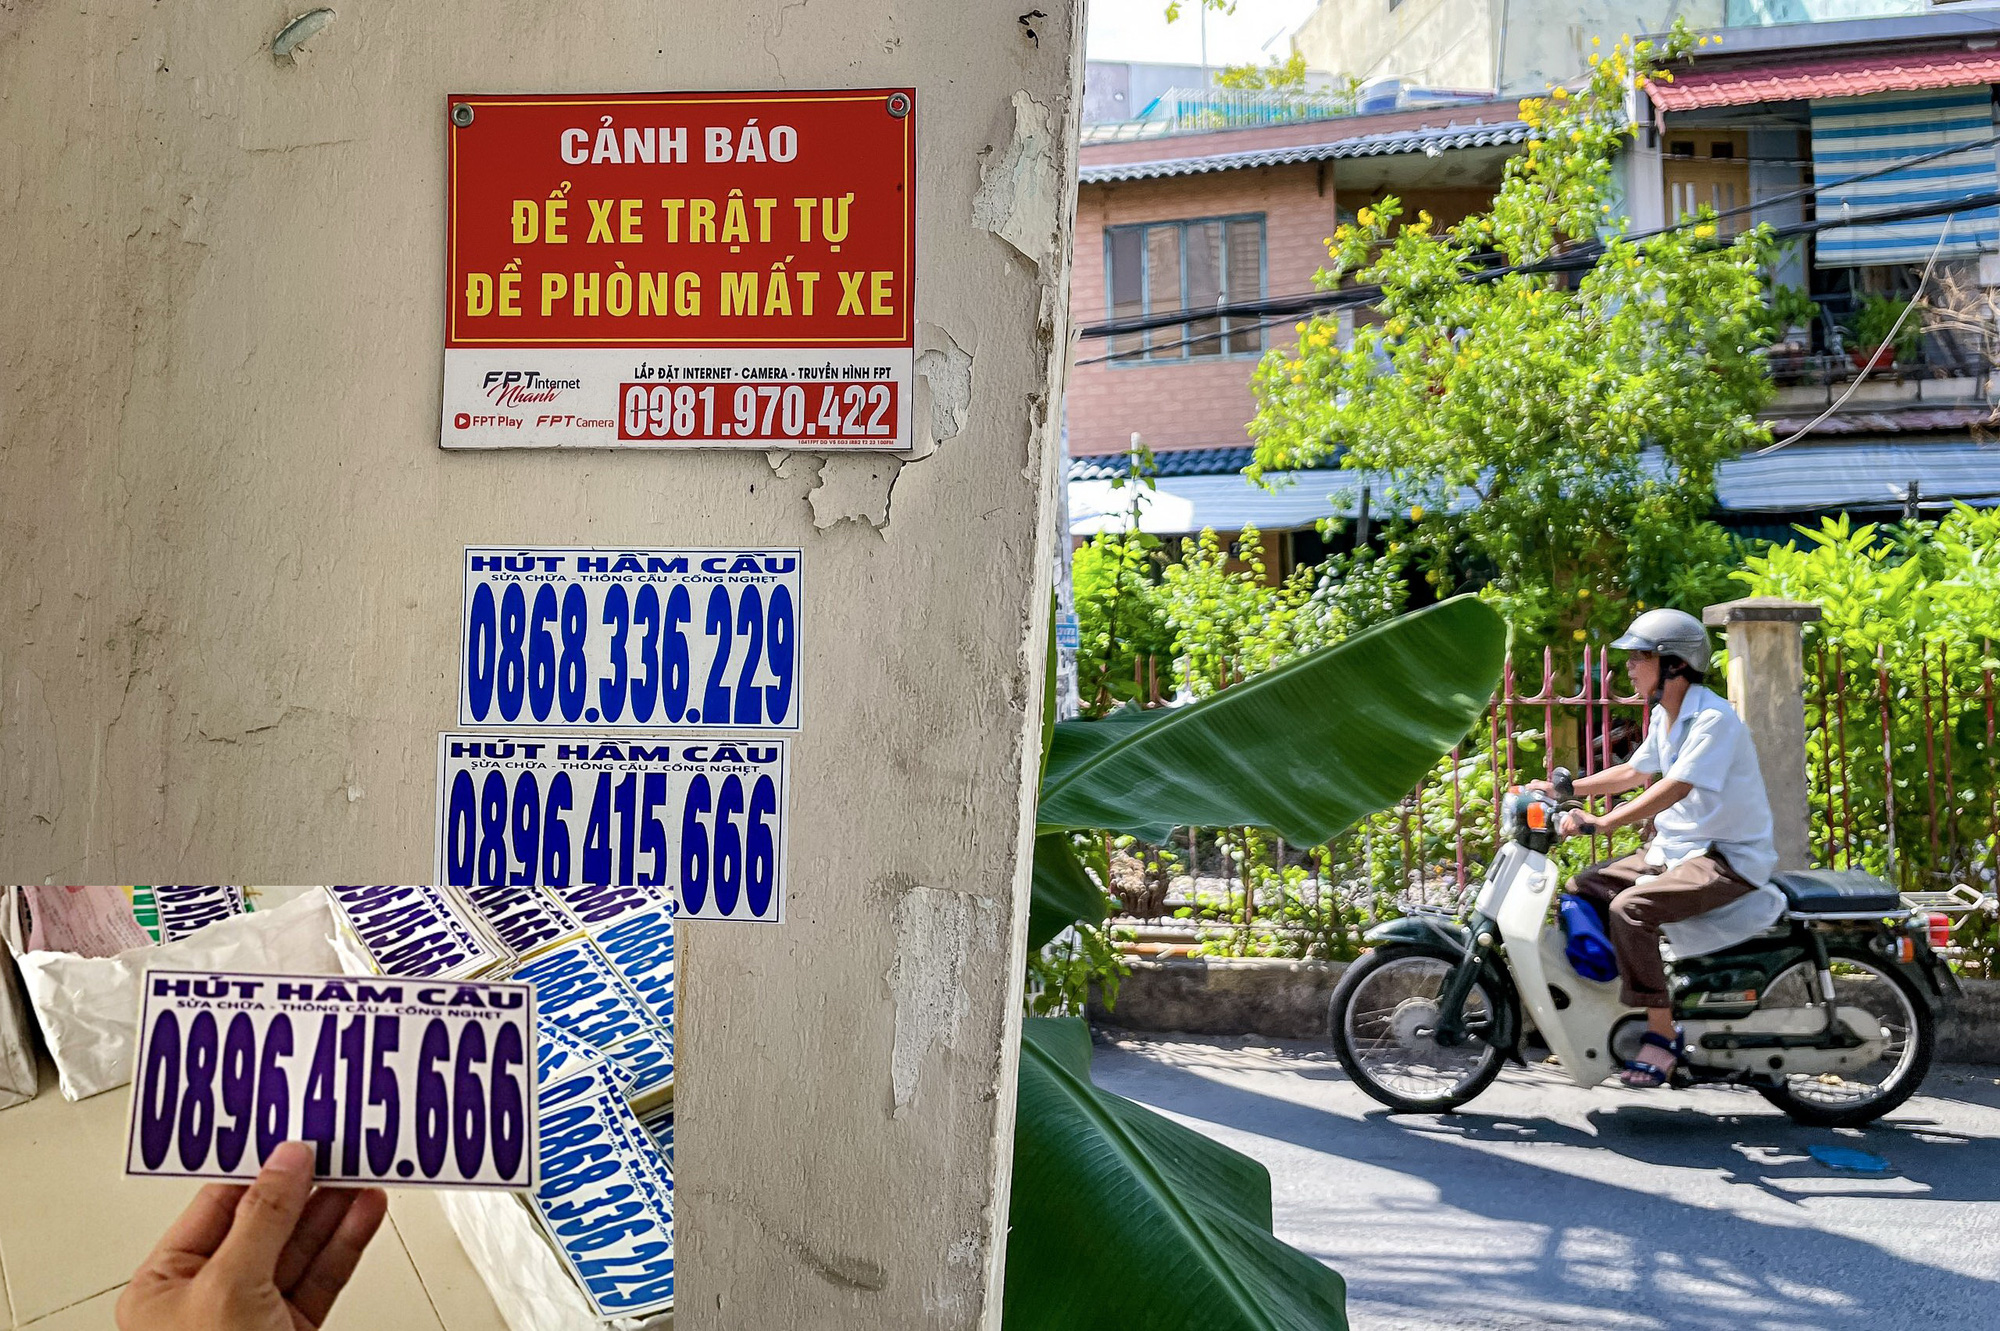 Số điện thoại 0896.415.666 liên quan đến vụ lừa hút hầm cầu (Tuổi Trẻ ghi nhận hai năm trước) tại lò dán bậy ở quận Phú Nhuận nay lại xuất hiện nhiều trở lại tại các tuyến đường, hẻm khác ở TP.HCM - Ảnh: C.T. - L.P.